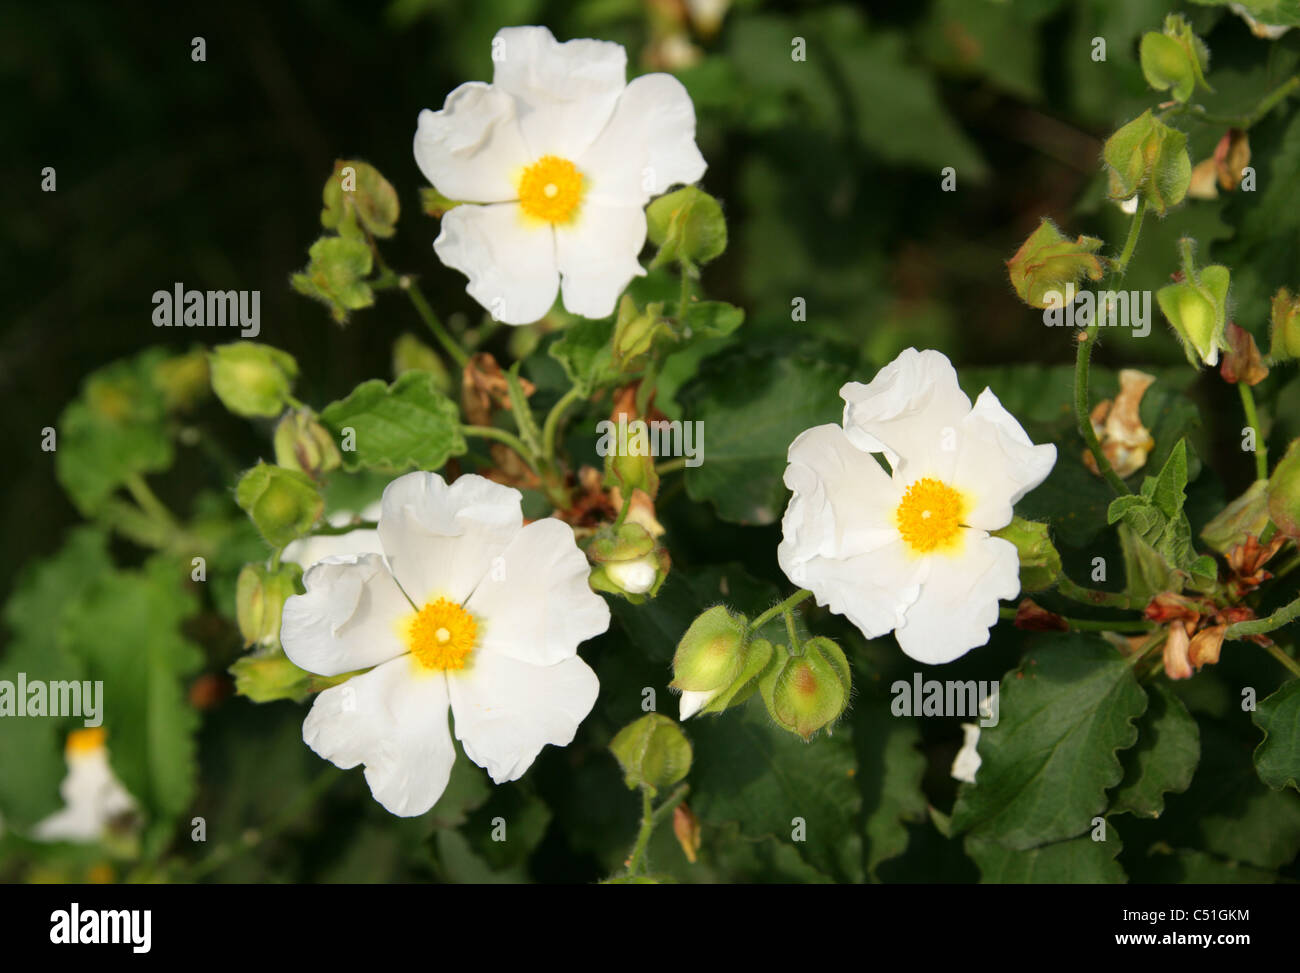 Rockrose, Cistus populifolius, Cistaceae. Stock Photo